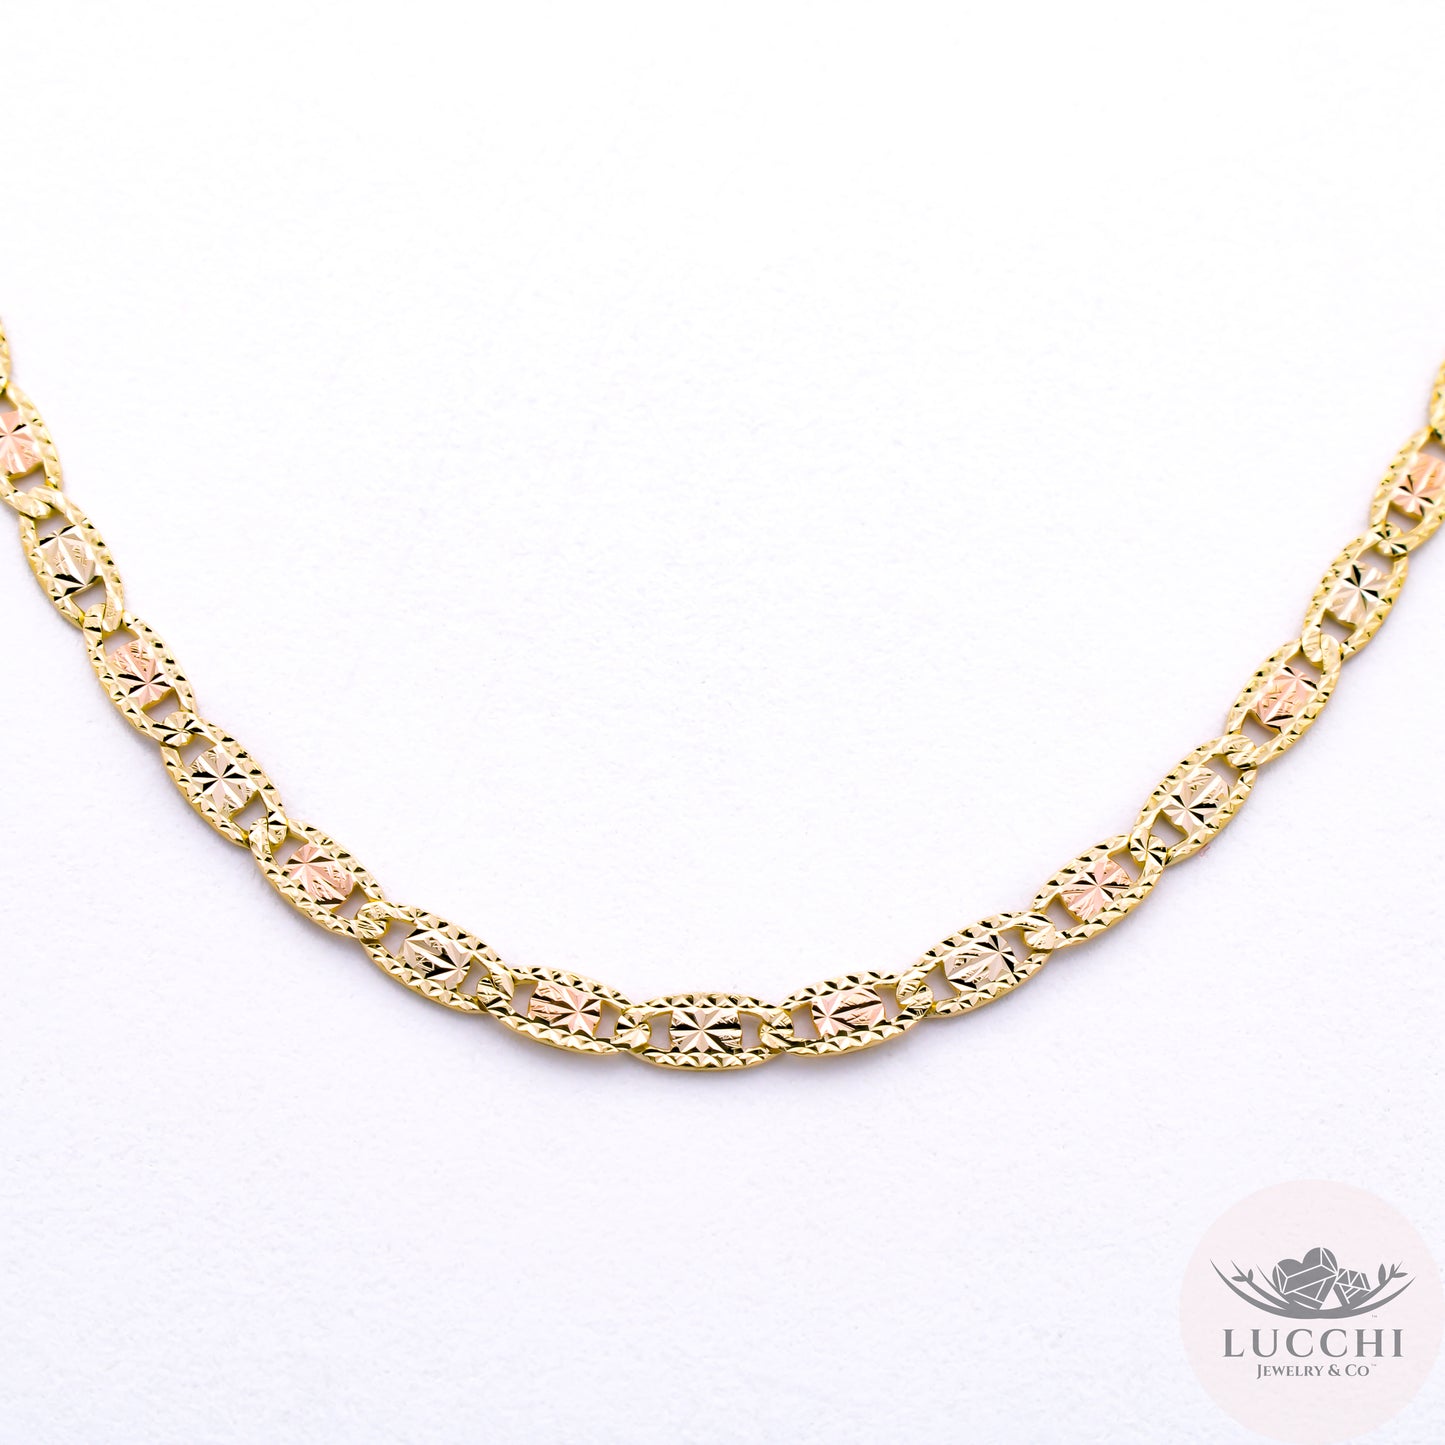 24" Mariner Flat Tri Gold Chain Necklace - Star Diamond Cuts - 3mm - 14k